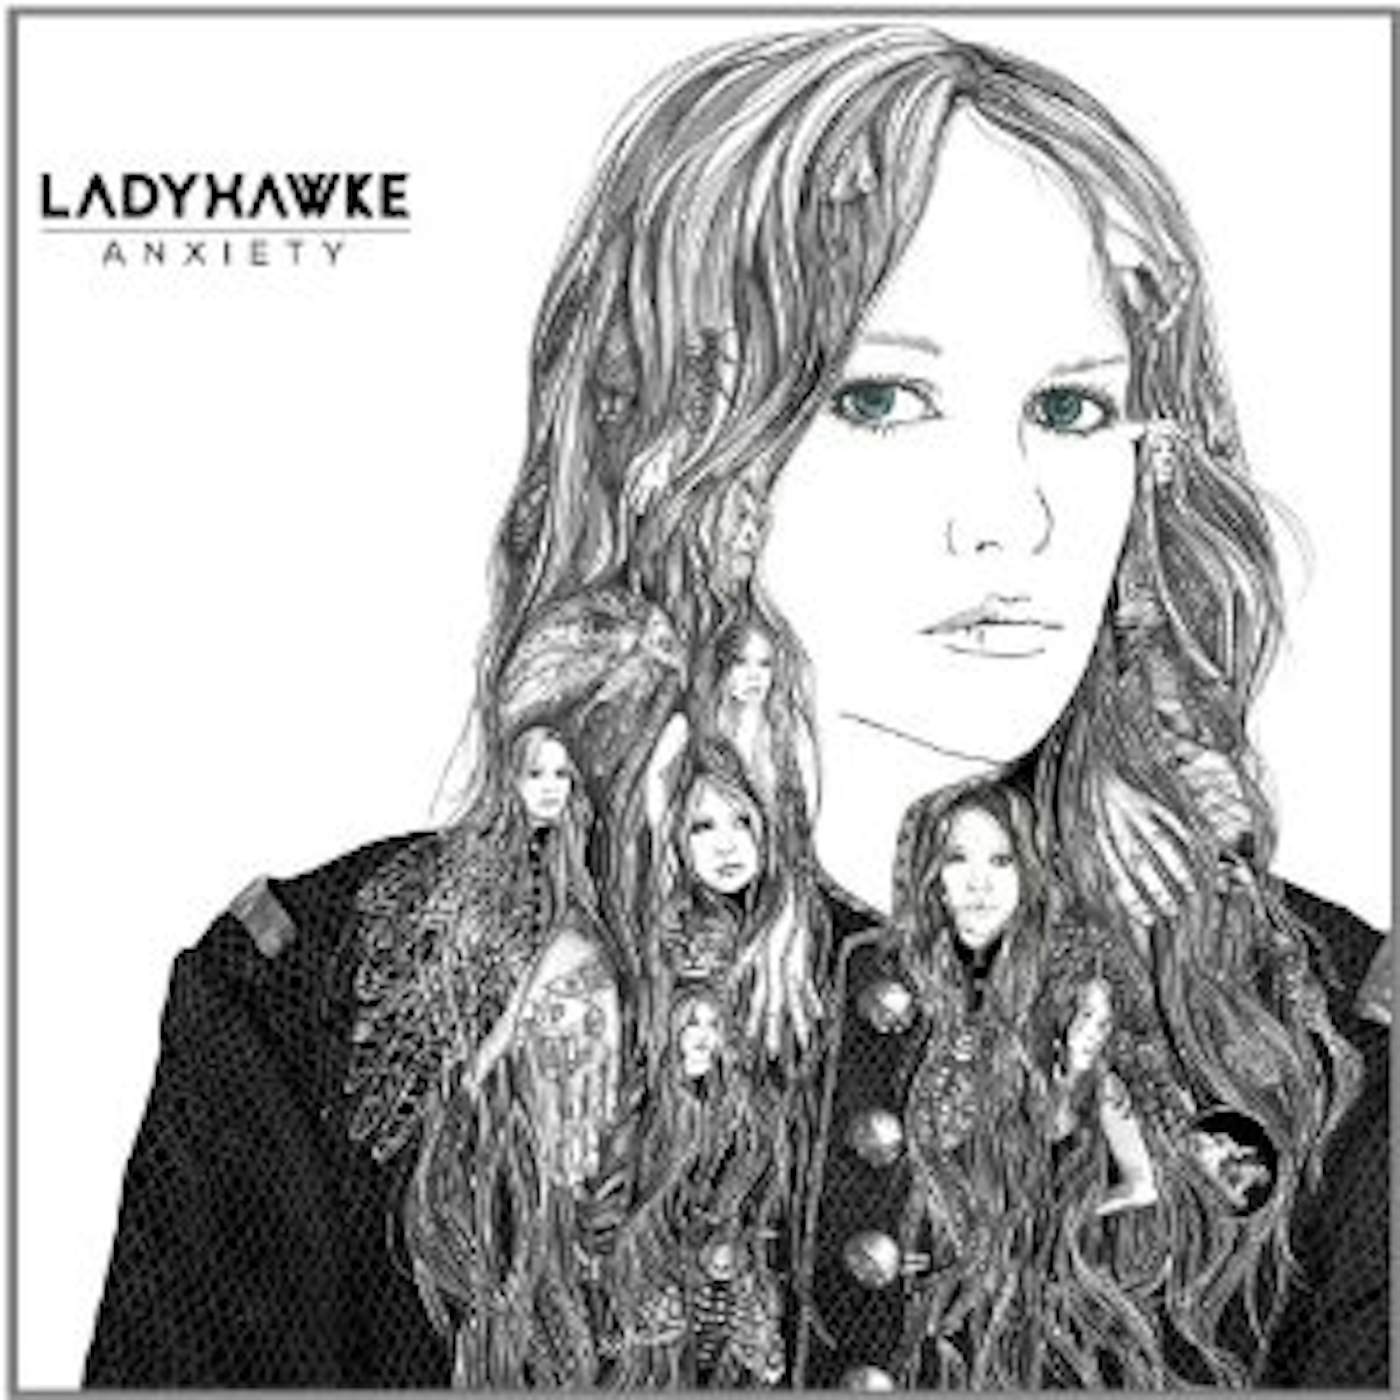 Ladyhawke ANXIETY CD